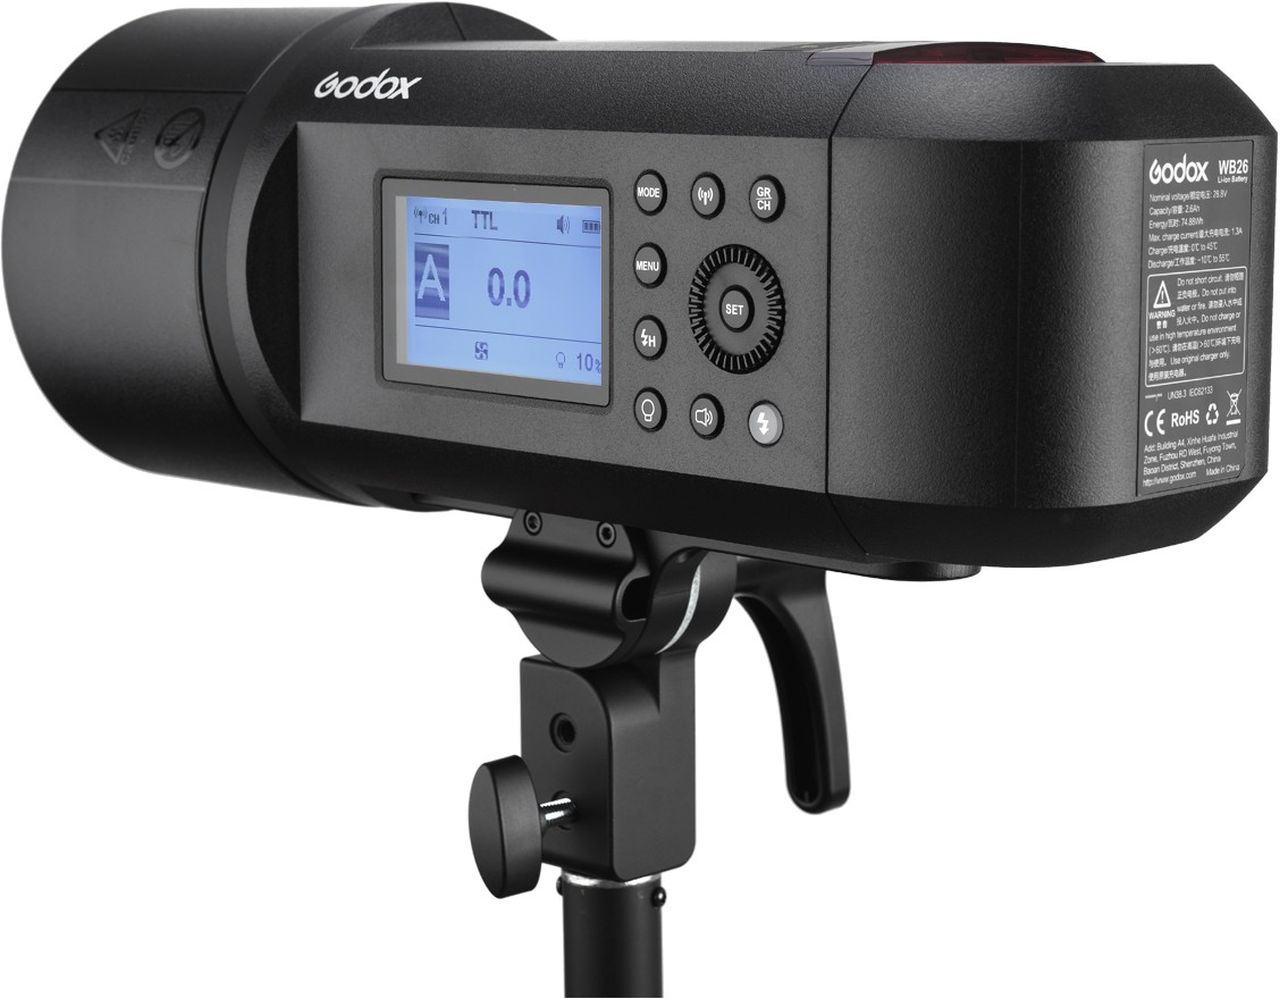 Godox AD600 Pro TTL WITSTRO studio flash unit